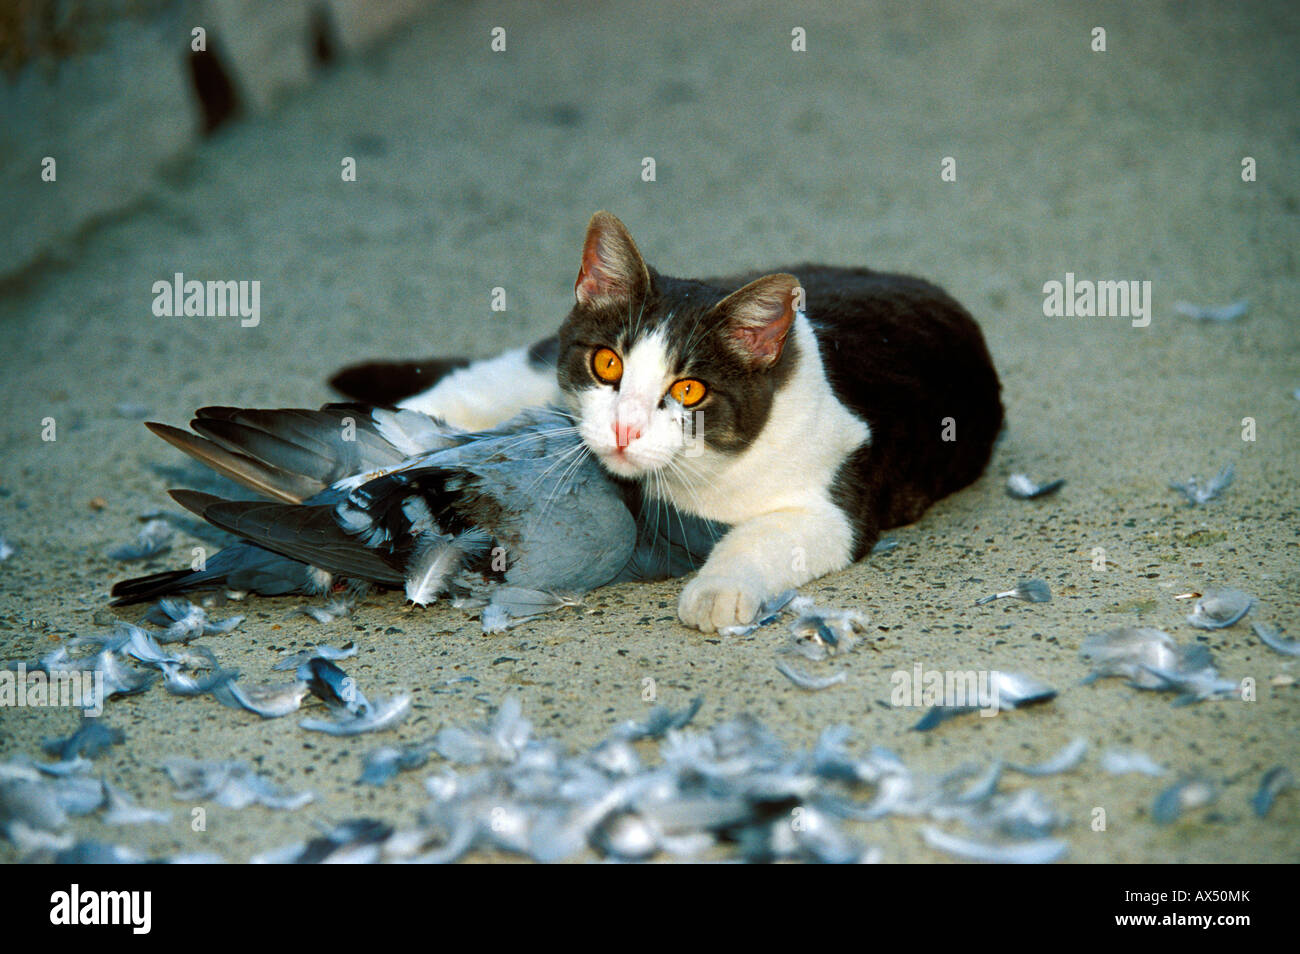 Gatto felis catus che ha ucciso un piccione Foto stock - Alamy